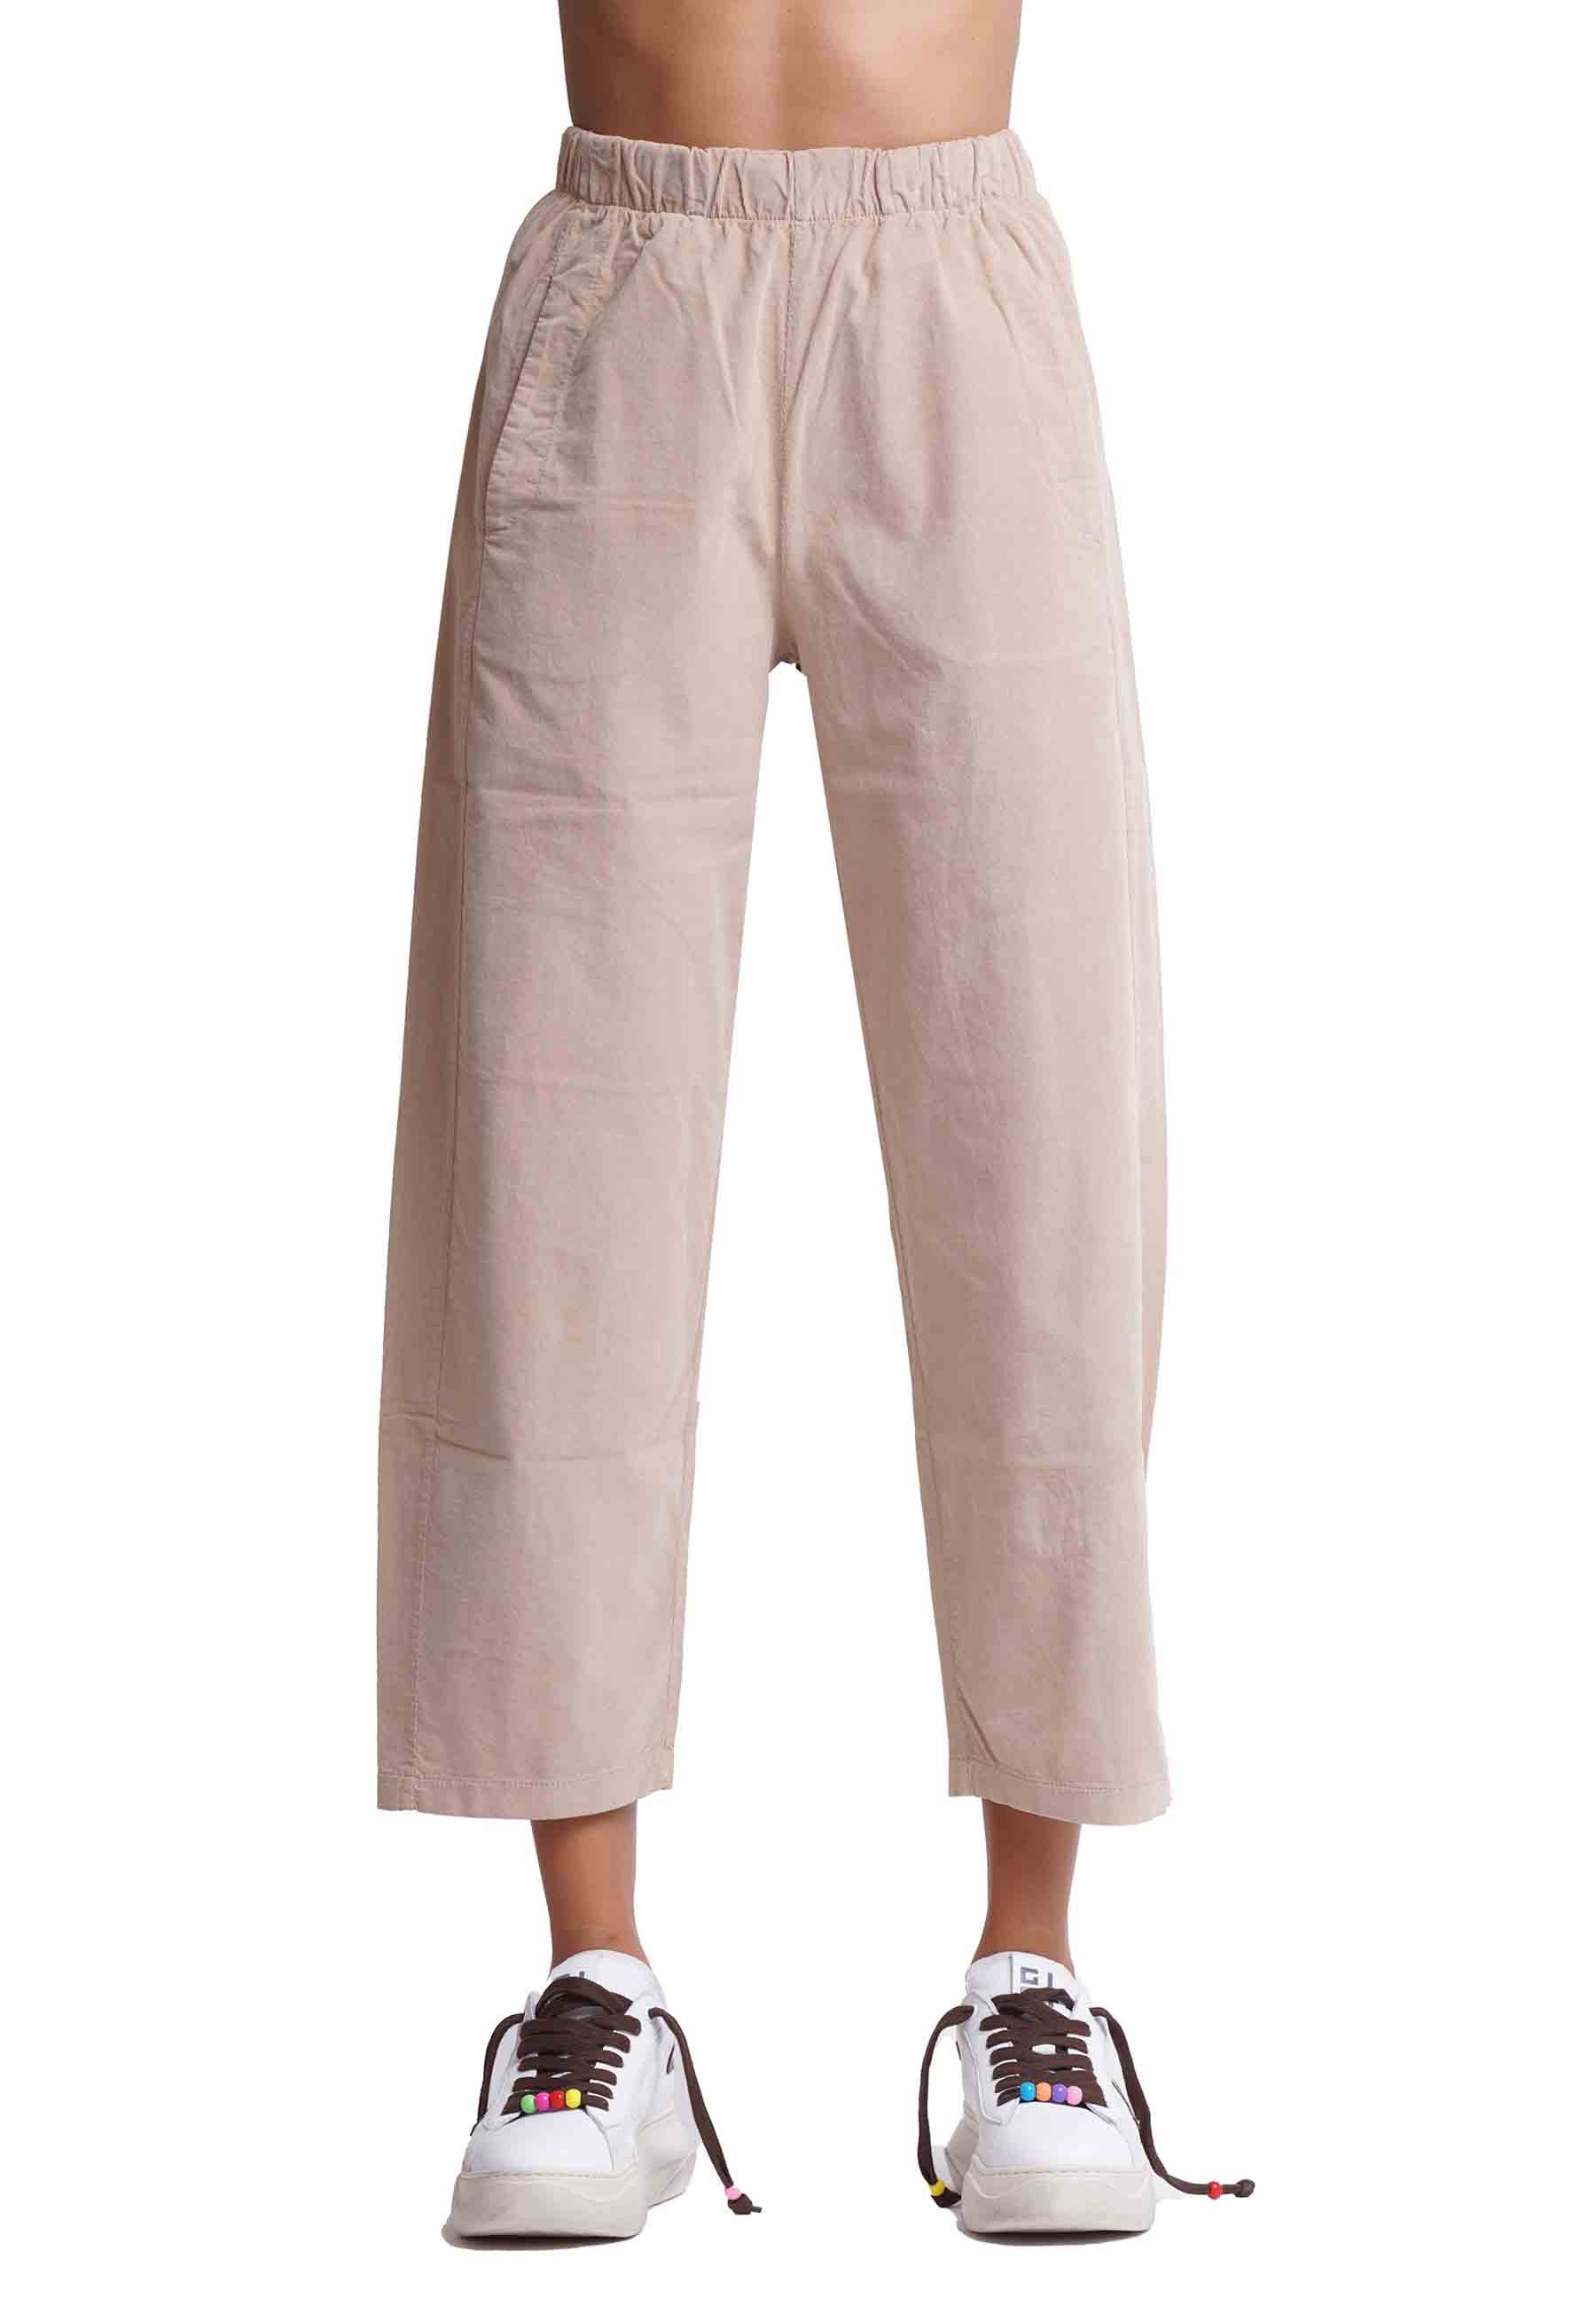 Women's beige cotton trousers